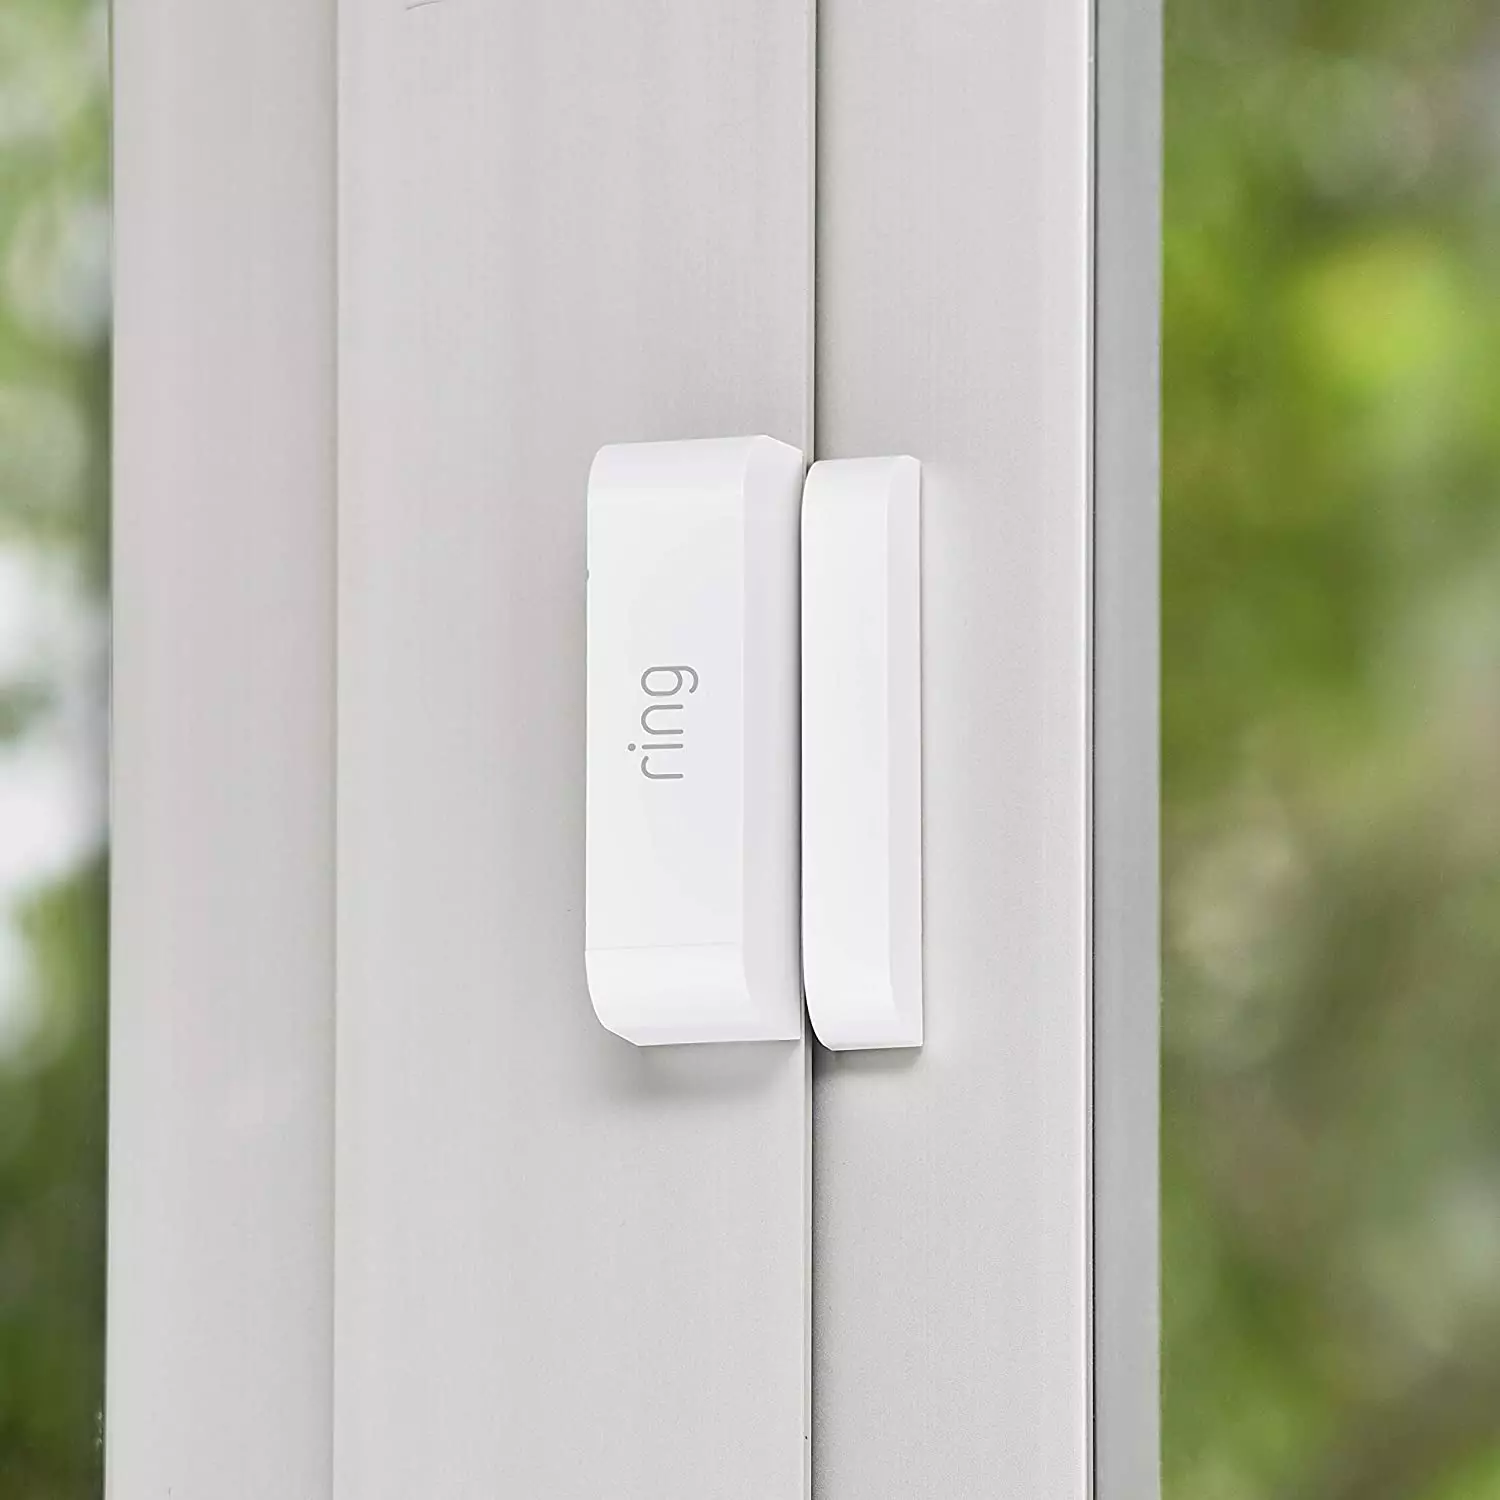 Ring Alarm Kit de 5 piezas – sistema de seguridad para el hogar con vigilancia asistida opcional – sin compromiso a largo plazo compatible con Alexa Día de la madre